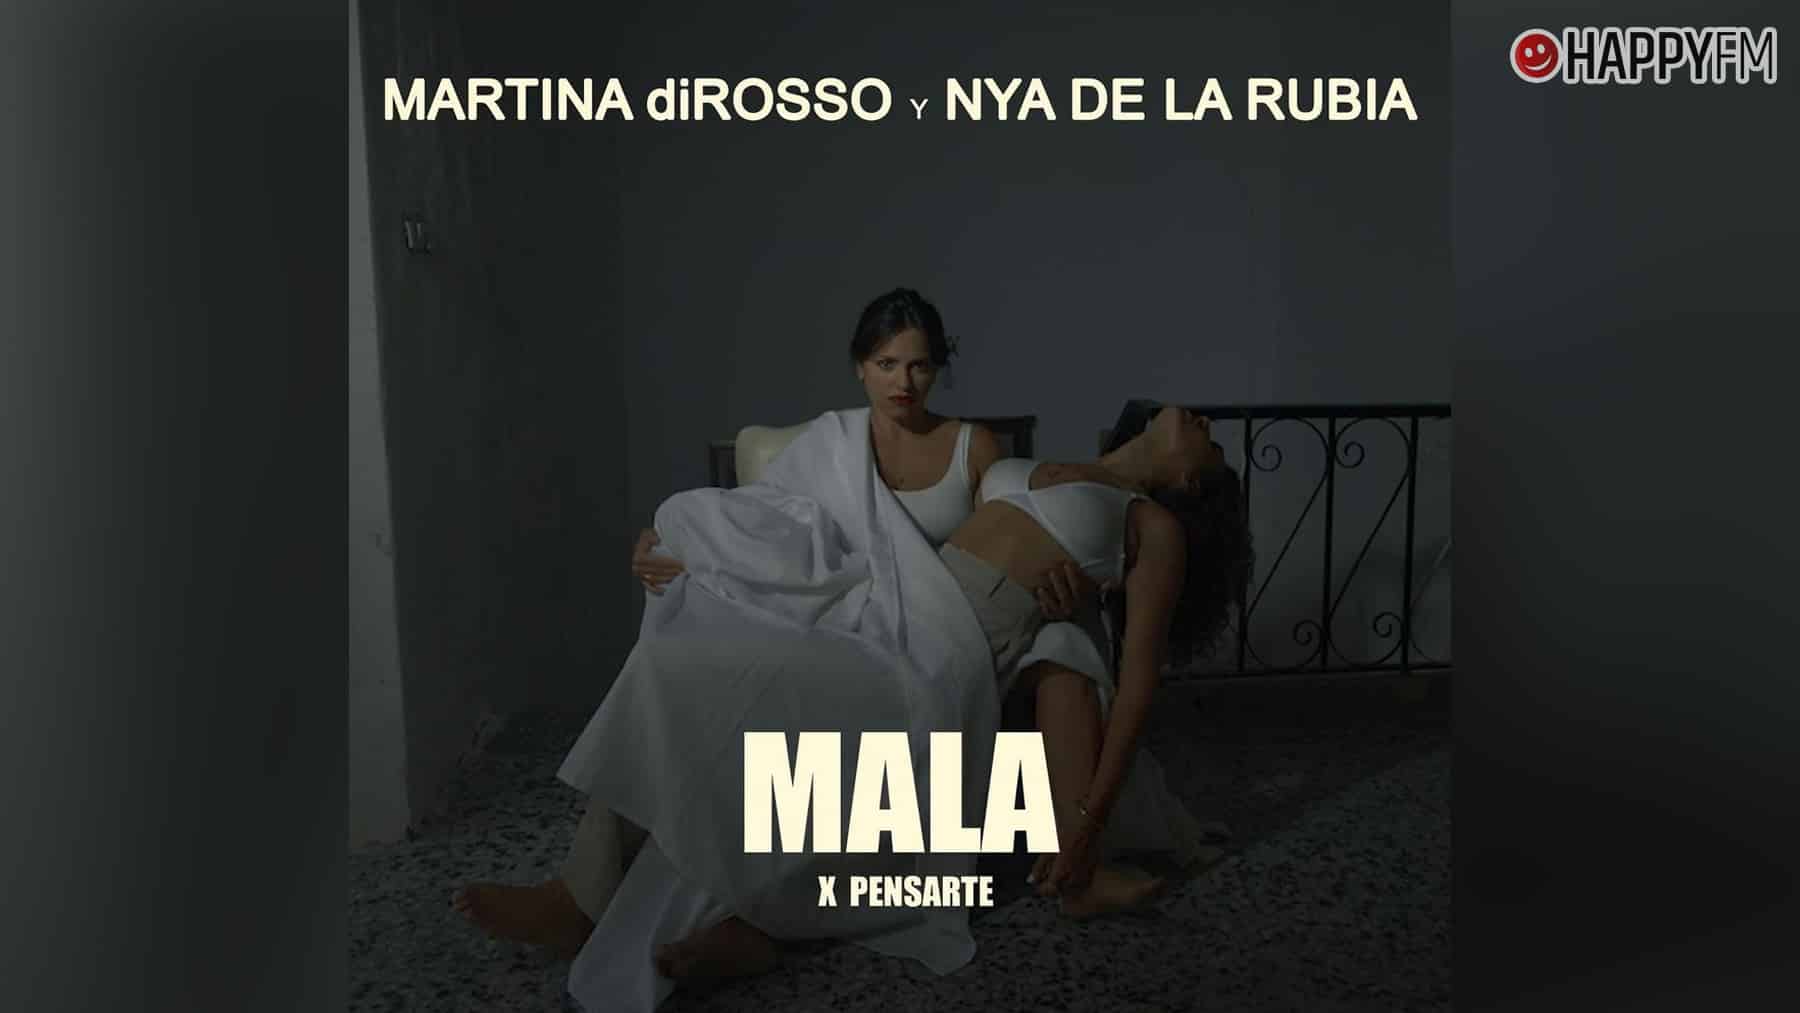 ‘Mala x pensarte’, de Martina diRosso y Nya de la Rubia: letra y vídeo